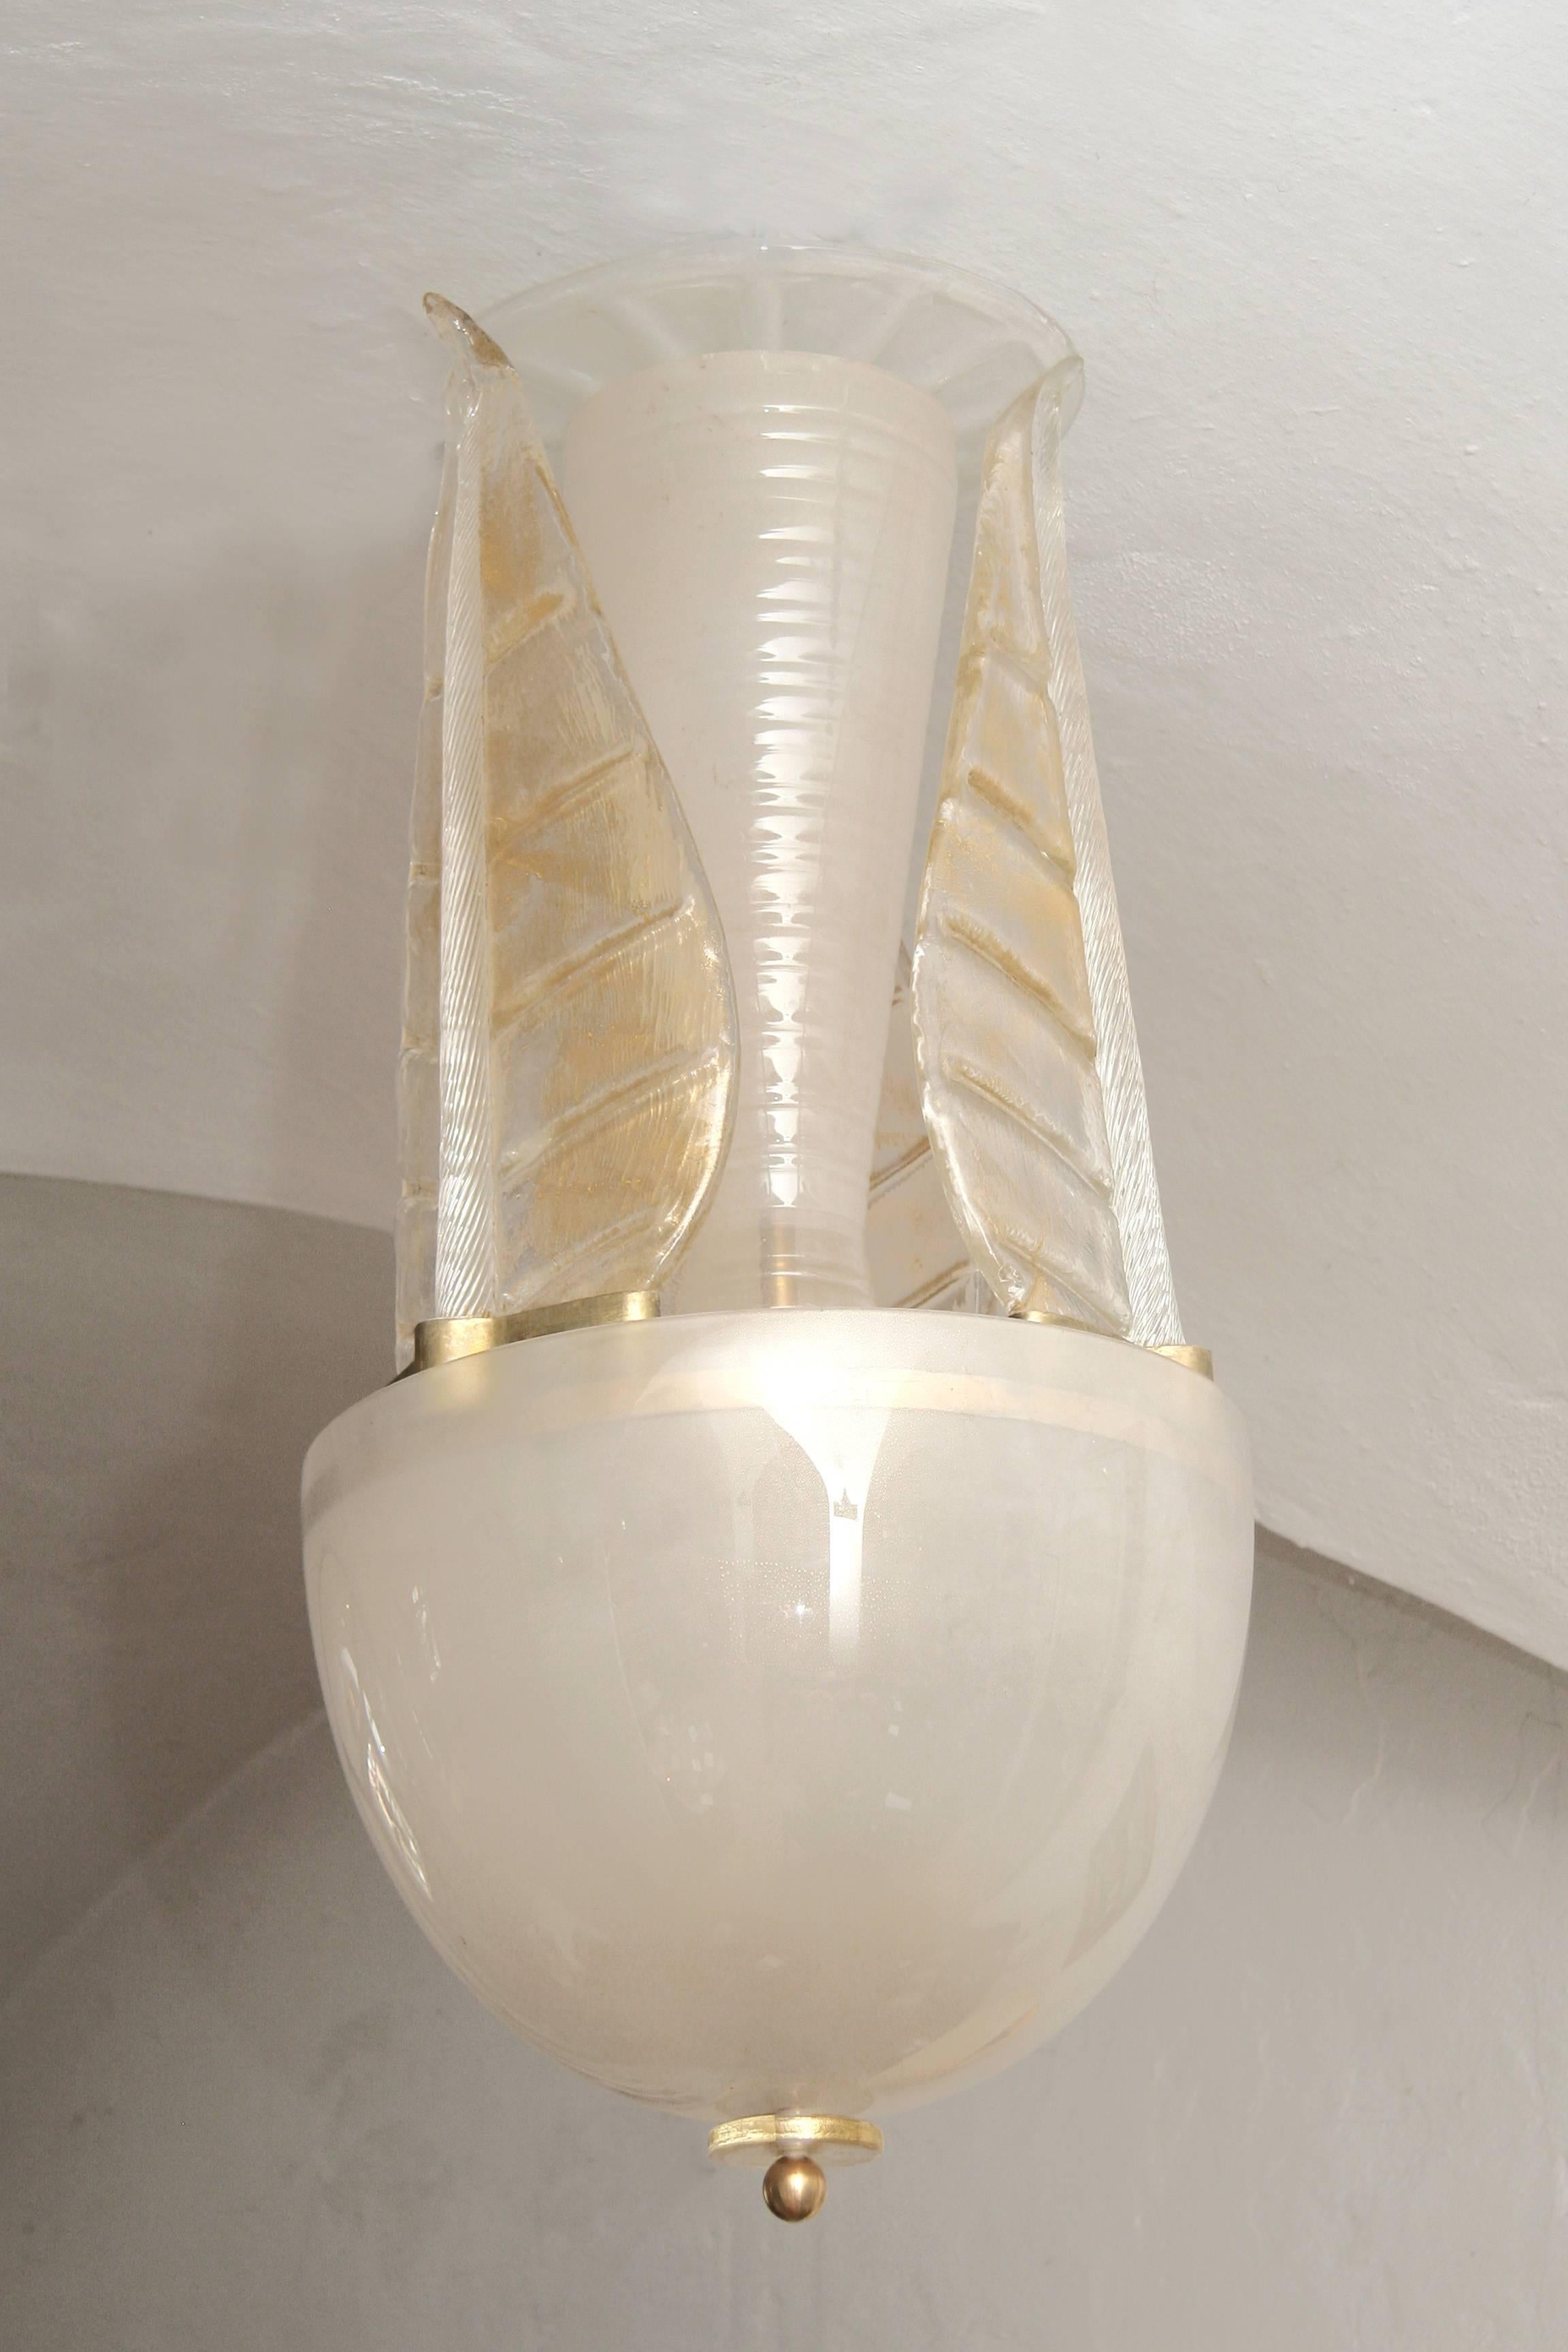 Eleganter Kronleuchter aus Muranoglas mit feinen Goldpartikeln in der Glasmasse.
Drei große Blätter umarmen den mittleren Schaft, eine Kugel mit 45cm Durchmesser
vergrößert die dreiflammige Elektrifizierung und vervollständigt die Form des